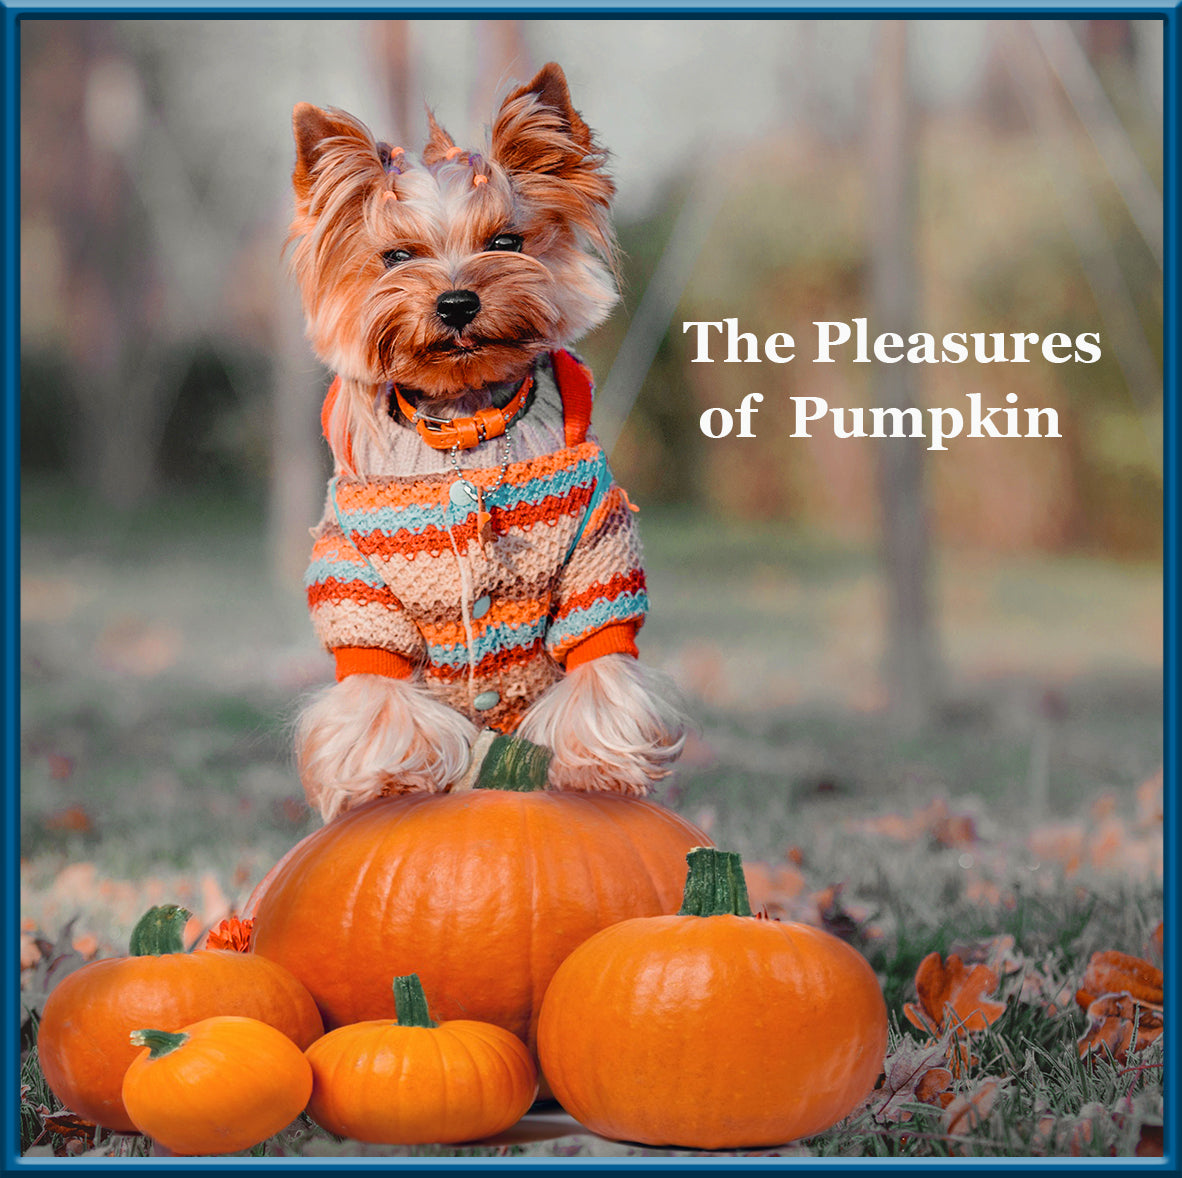 The Pleasures of Pumpkin